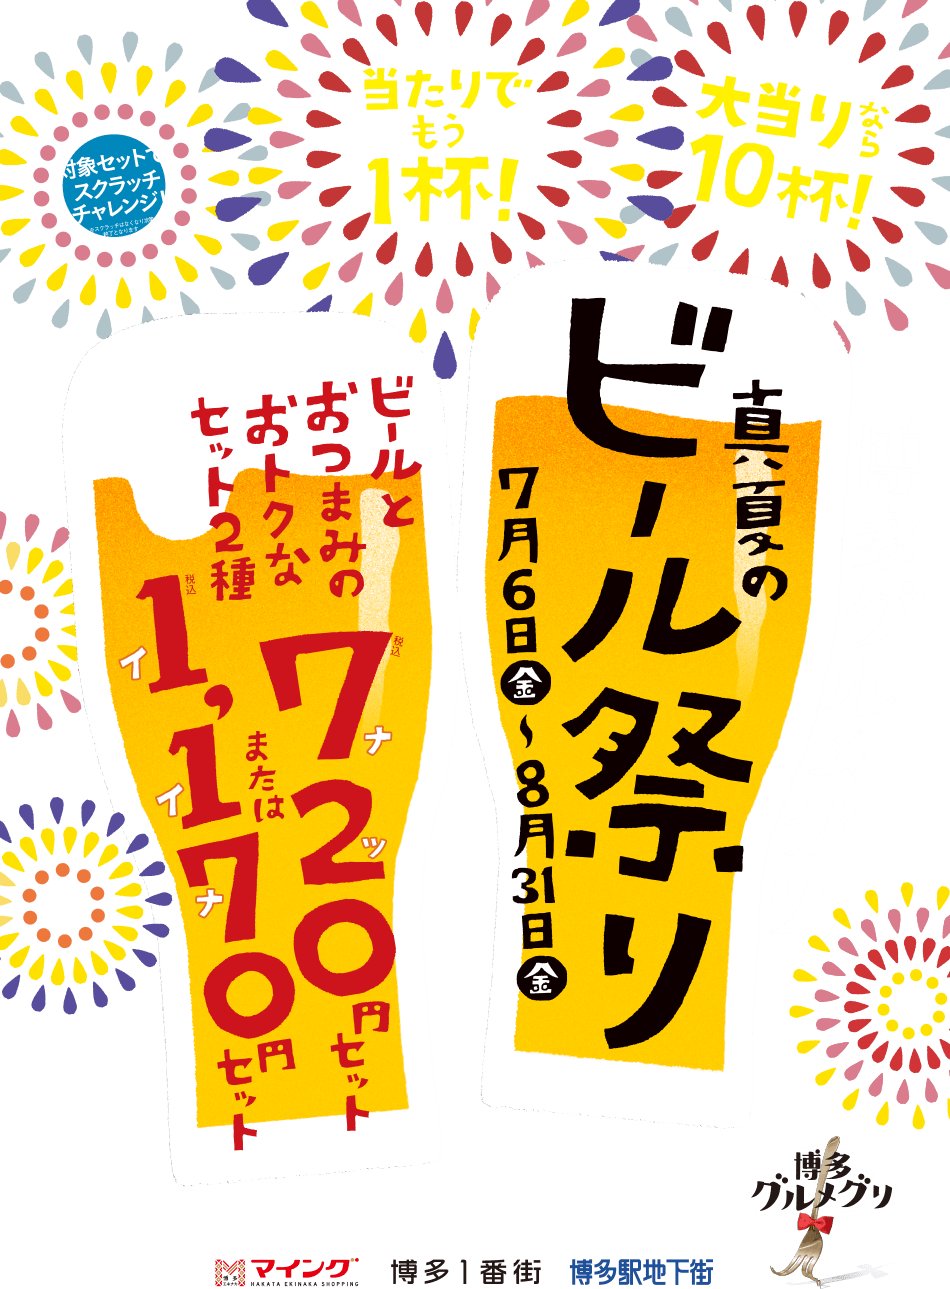 博多グルメグリ 真夏のビール祭り マイング 博多 九州のおみやげ処 全92店舗